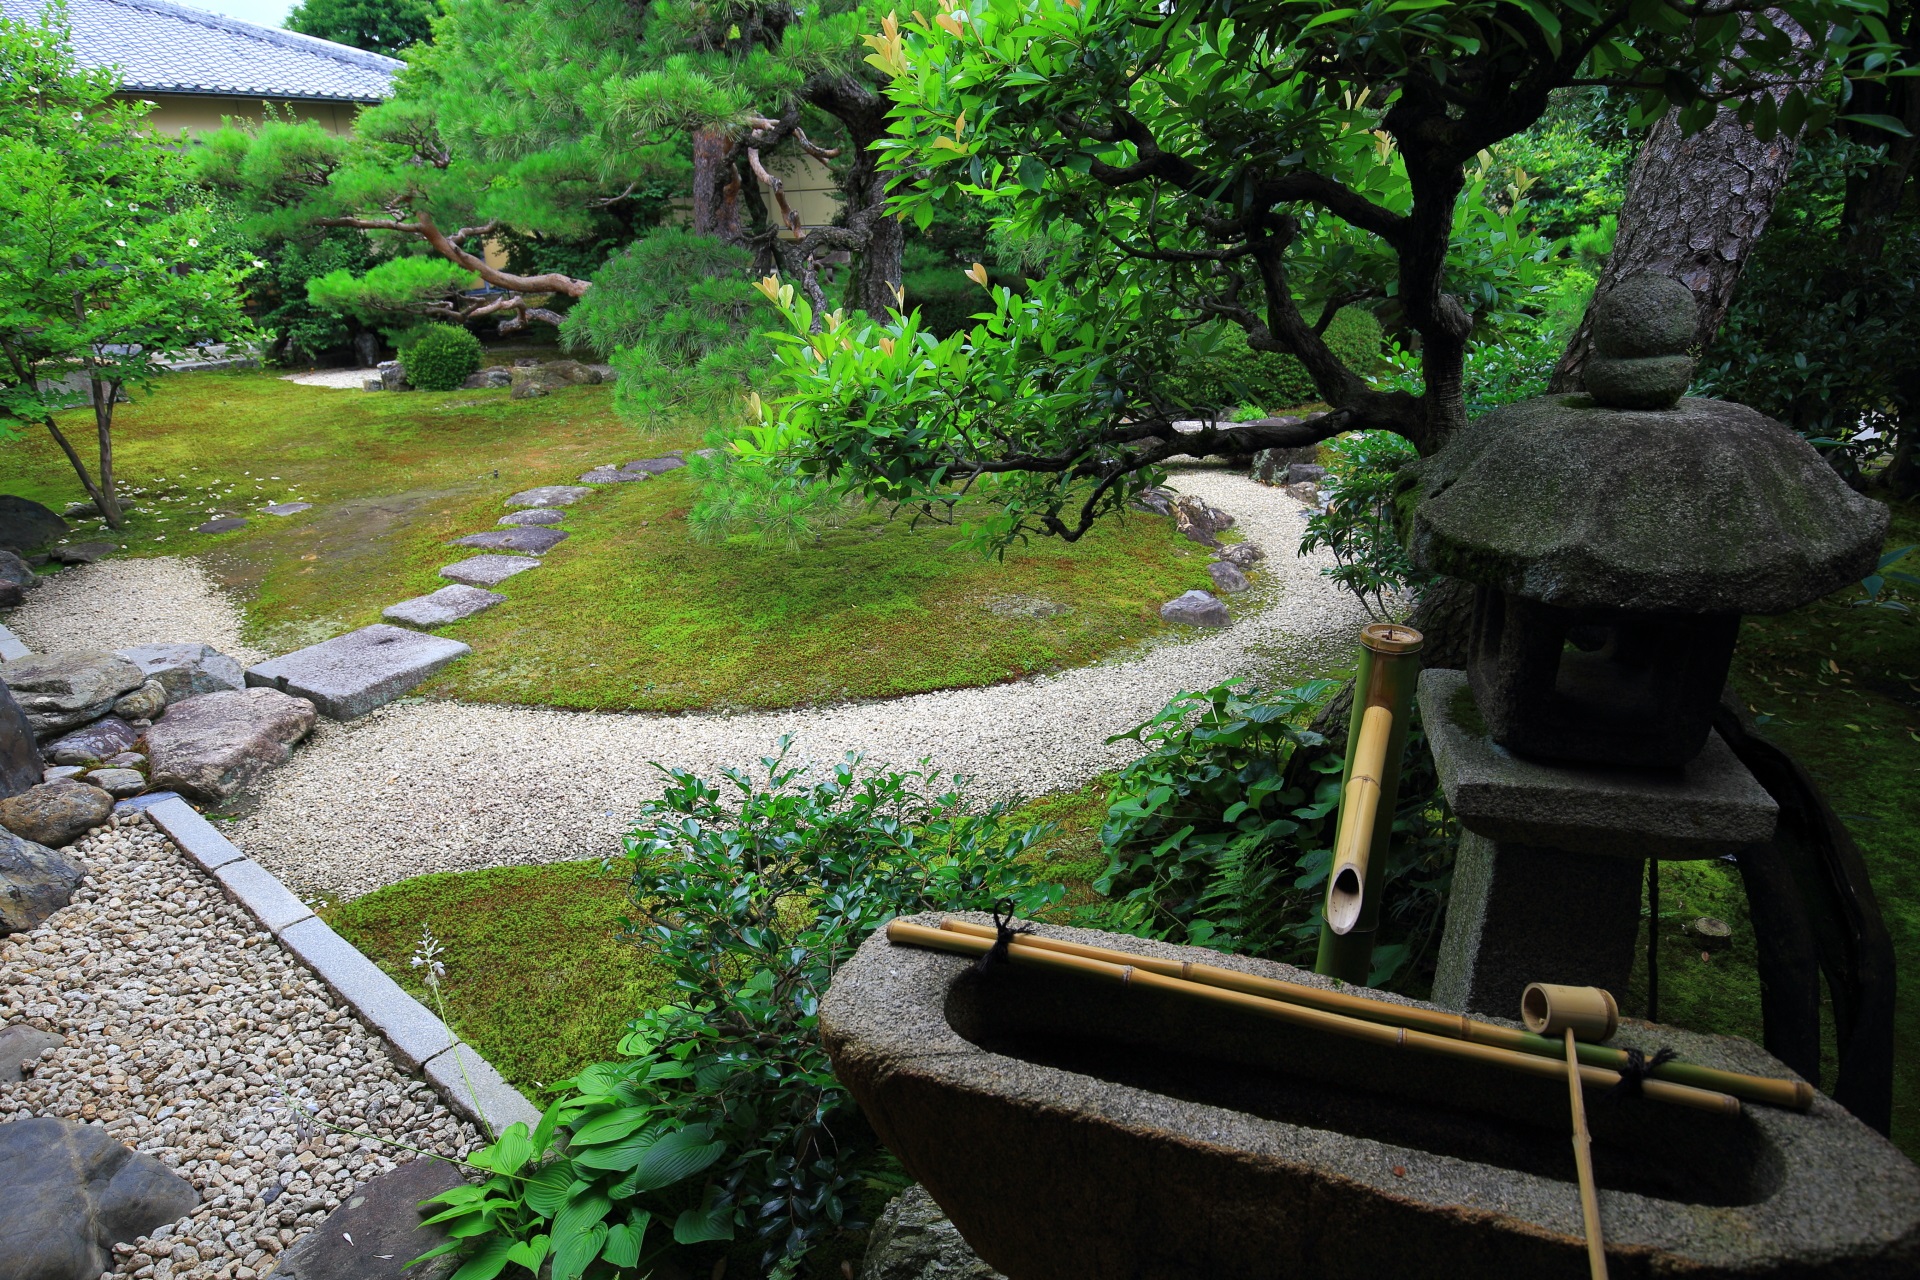 妙顕寺の庭園の灯籠と手水鉢